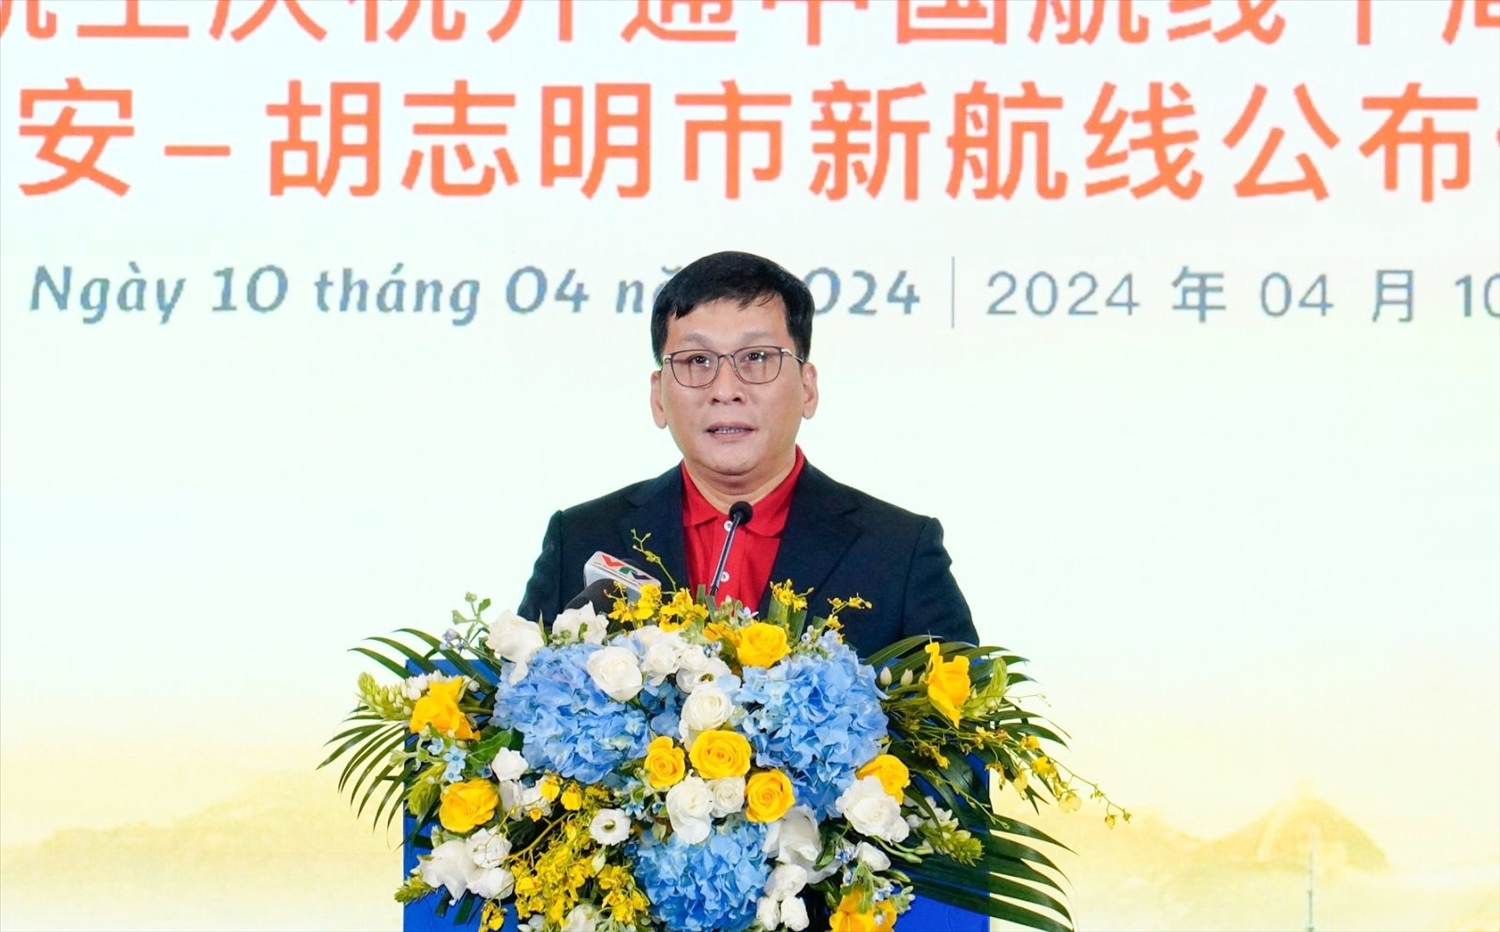 Vietjet công bố đường bay mới TP. HCM – Tây An, Trung Quốc 1